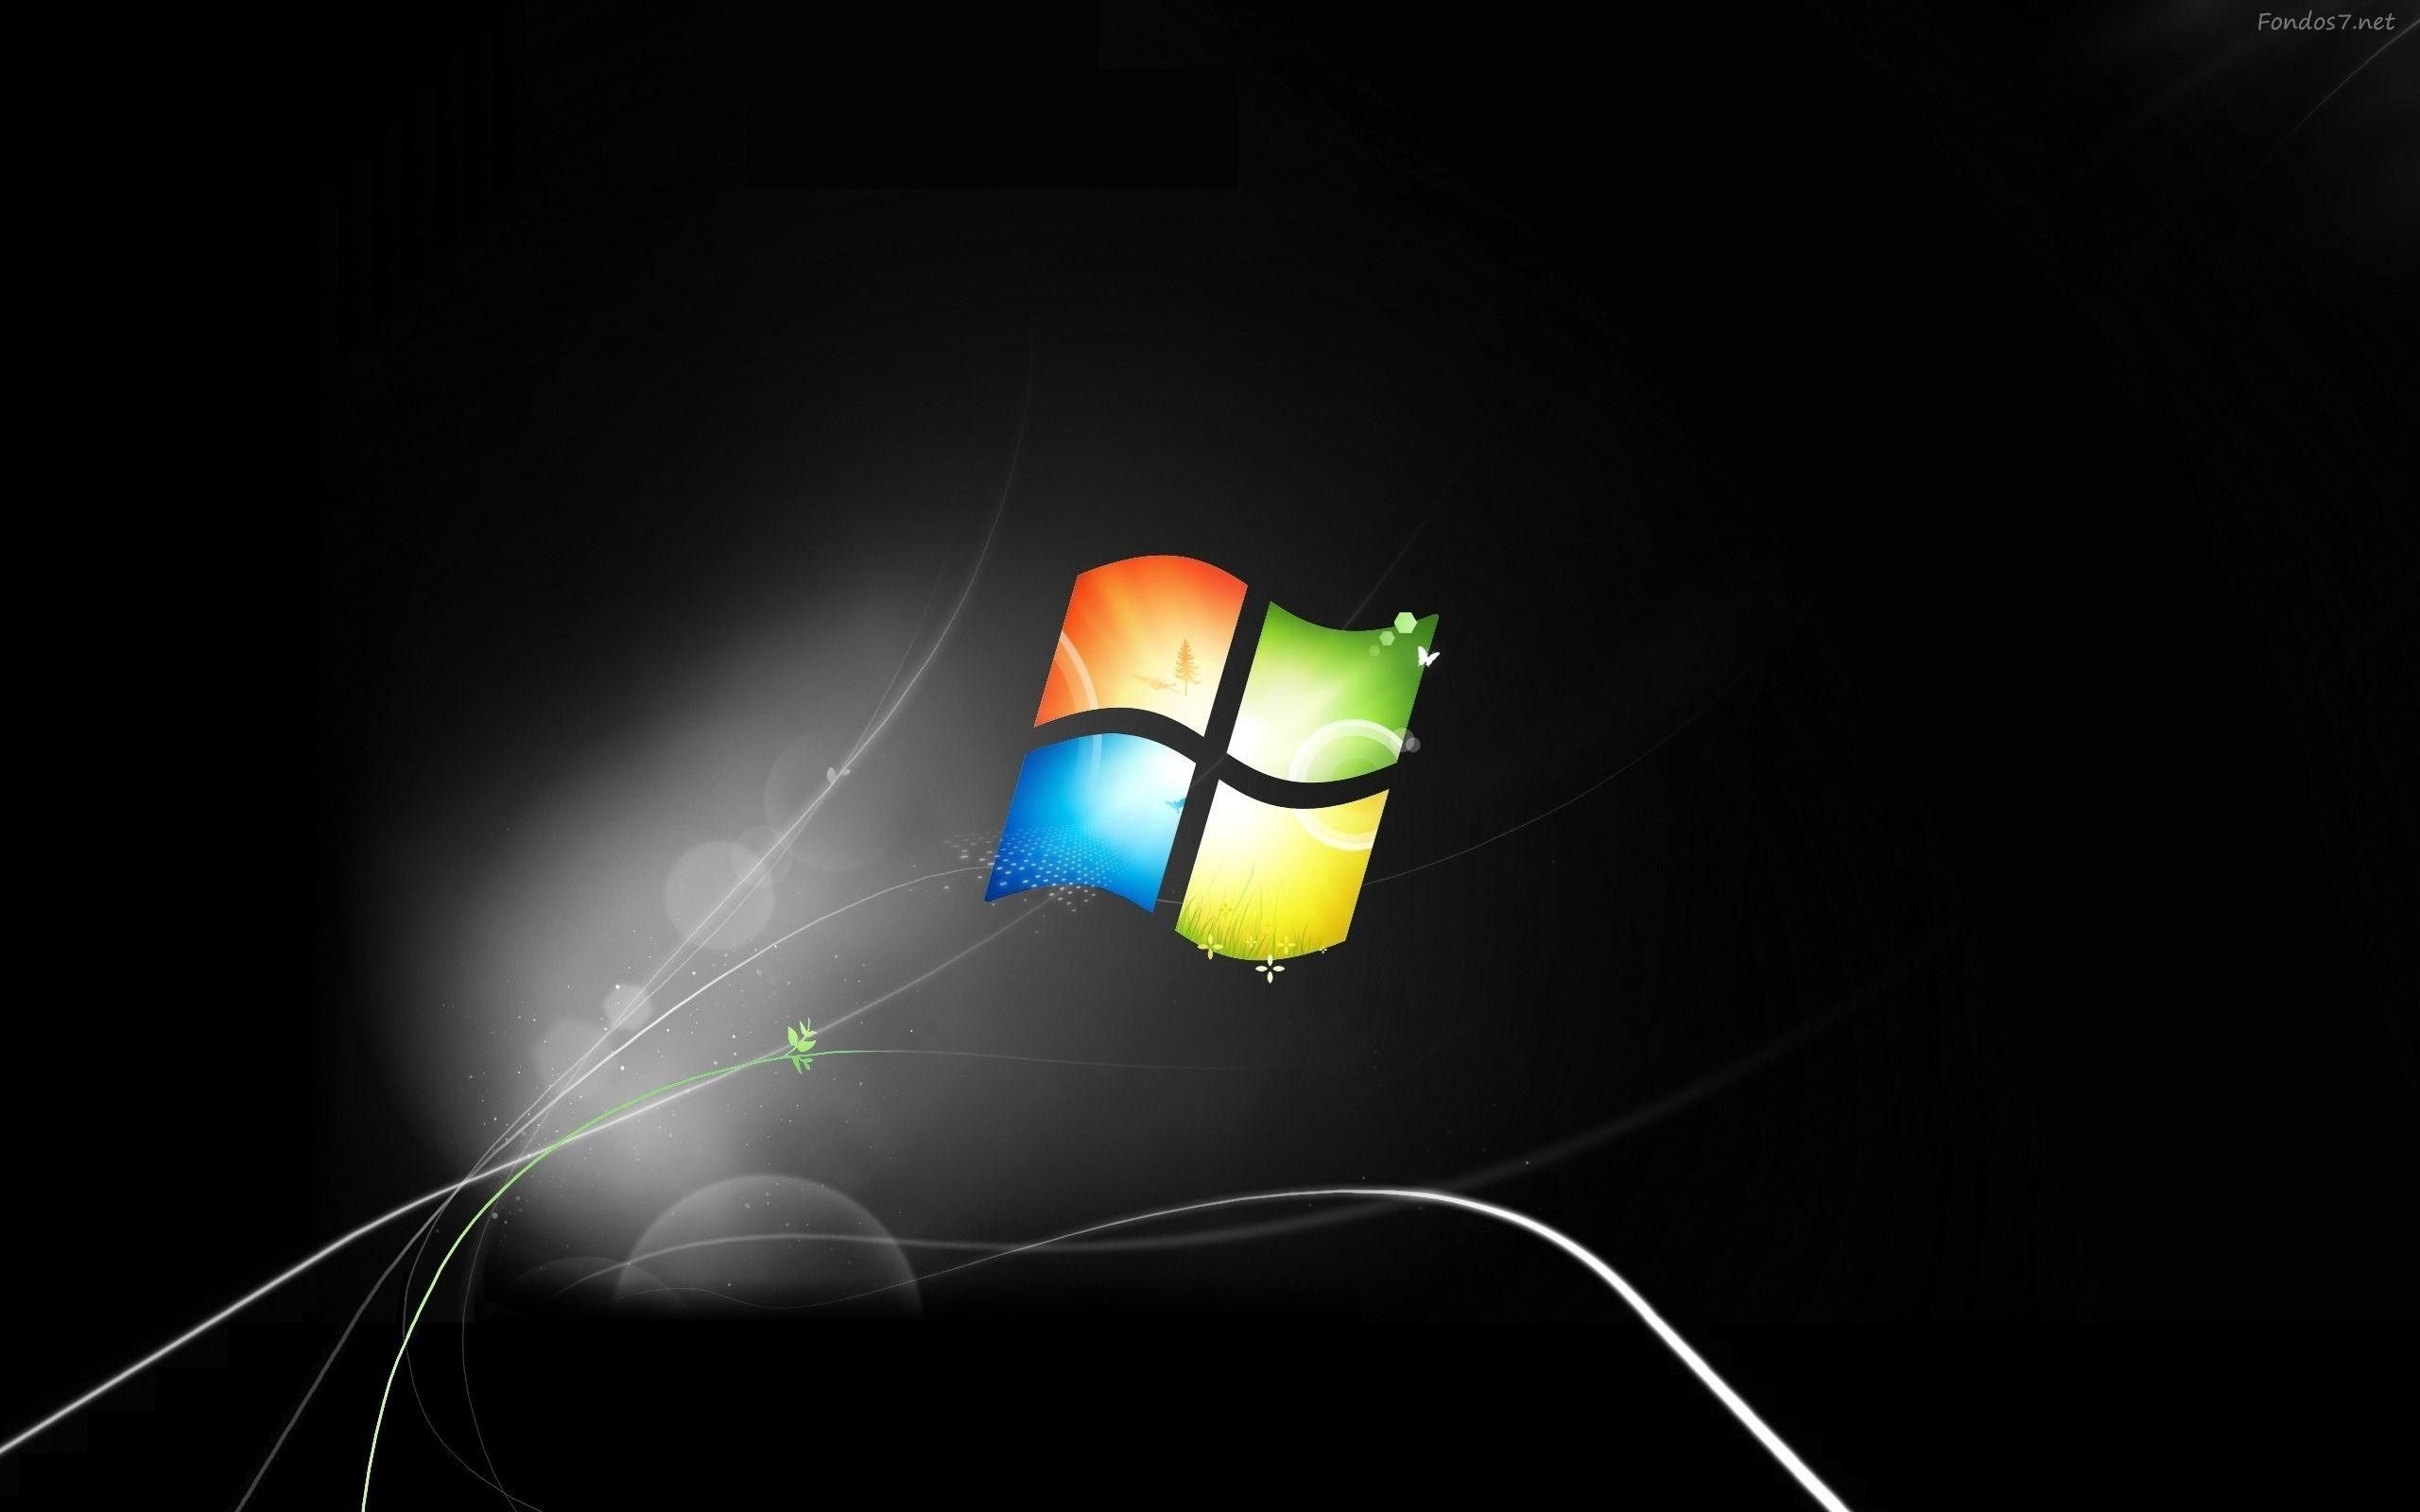 Hình nền Windows 7 trên WallpaperDog có rất nhiều lựa chọn đẹp mắt. Từ những hình ảnh thiên nhiên đến những hình ảnh hình hoạt, tất cả đều mang đến một cái nhìn mới lạ cho máy tính của bạn. Hãy đến với WallpaperDog và tìm cho mình một hình nền ưng ý nhất.